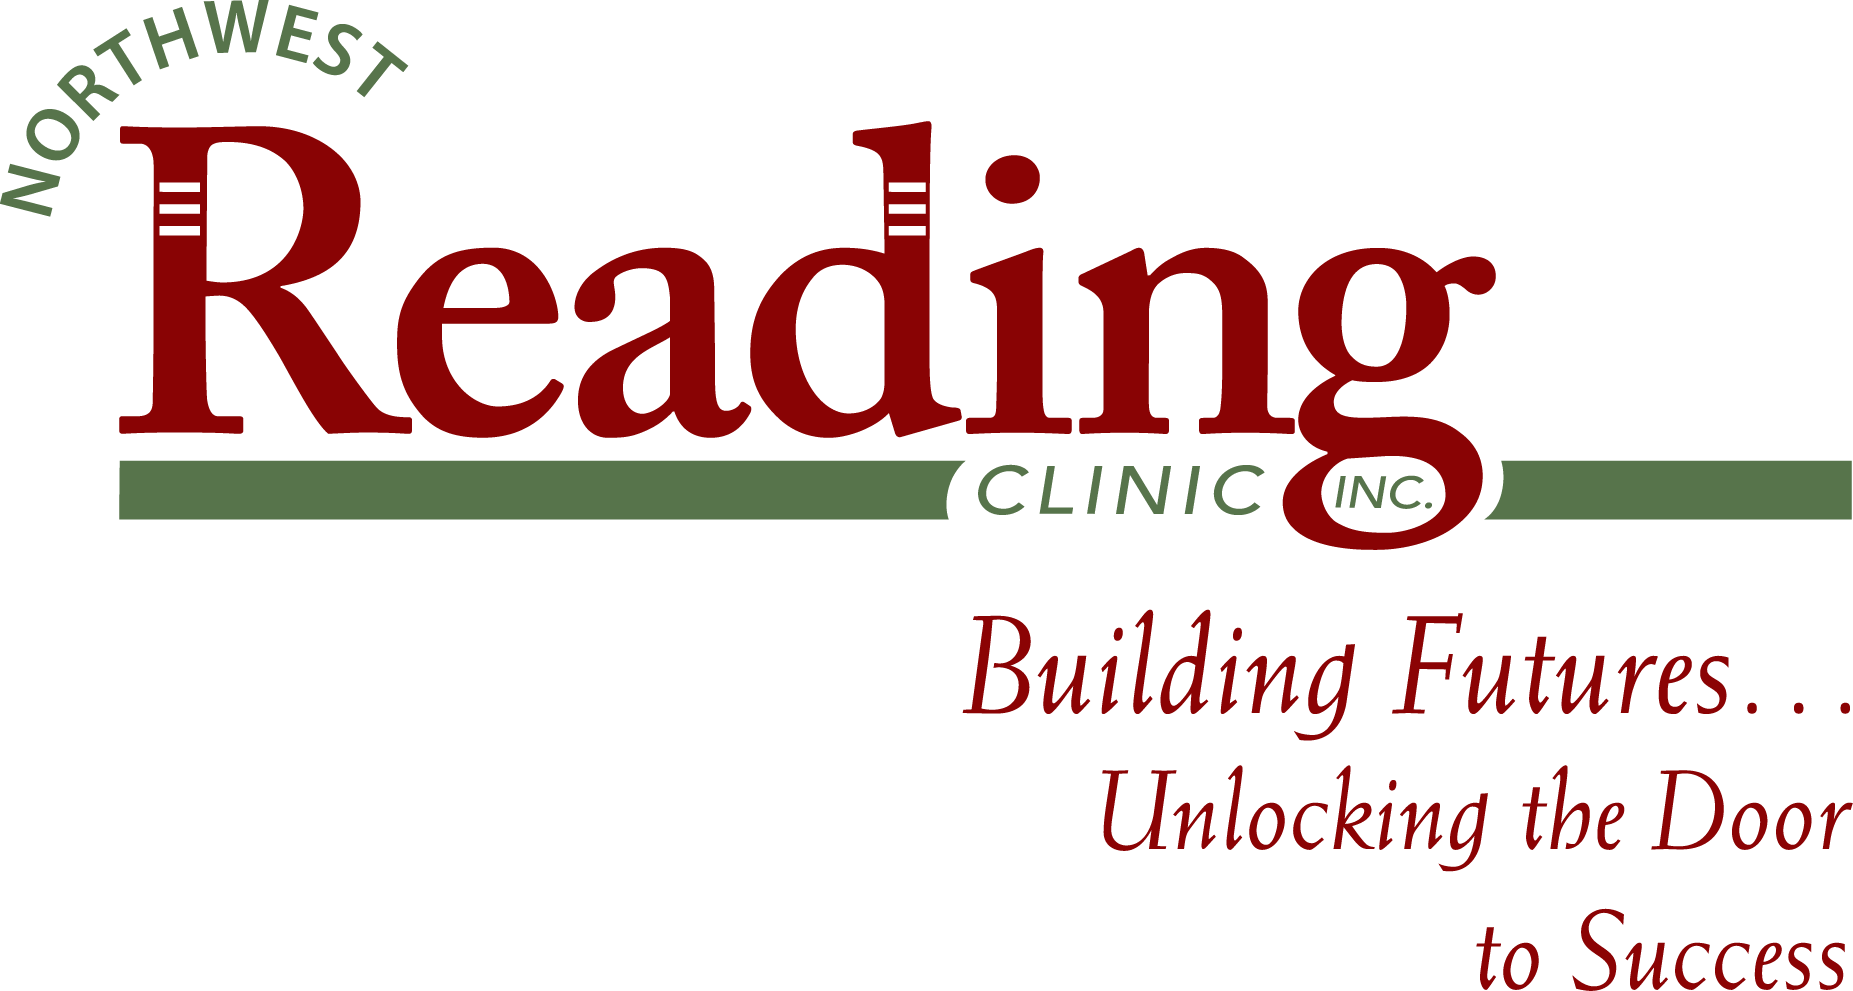 northwest reading clinic